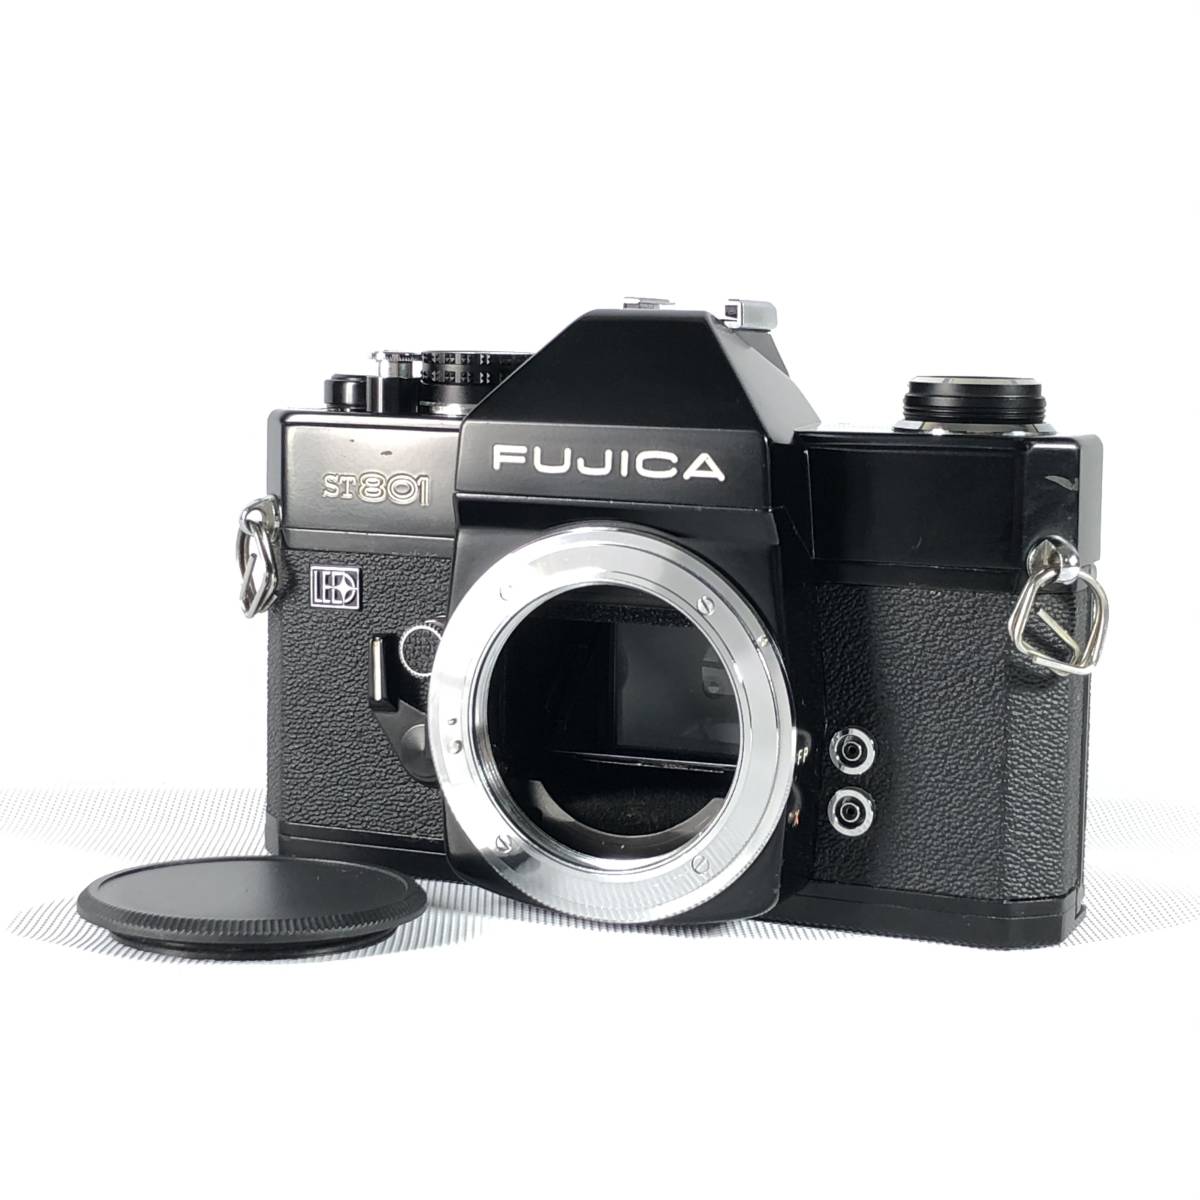 激安大特価 FUJICA ST801 フィルムカメラ M42マウント FUJINONレンズ